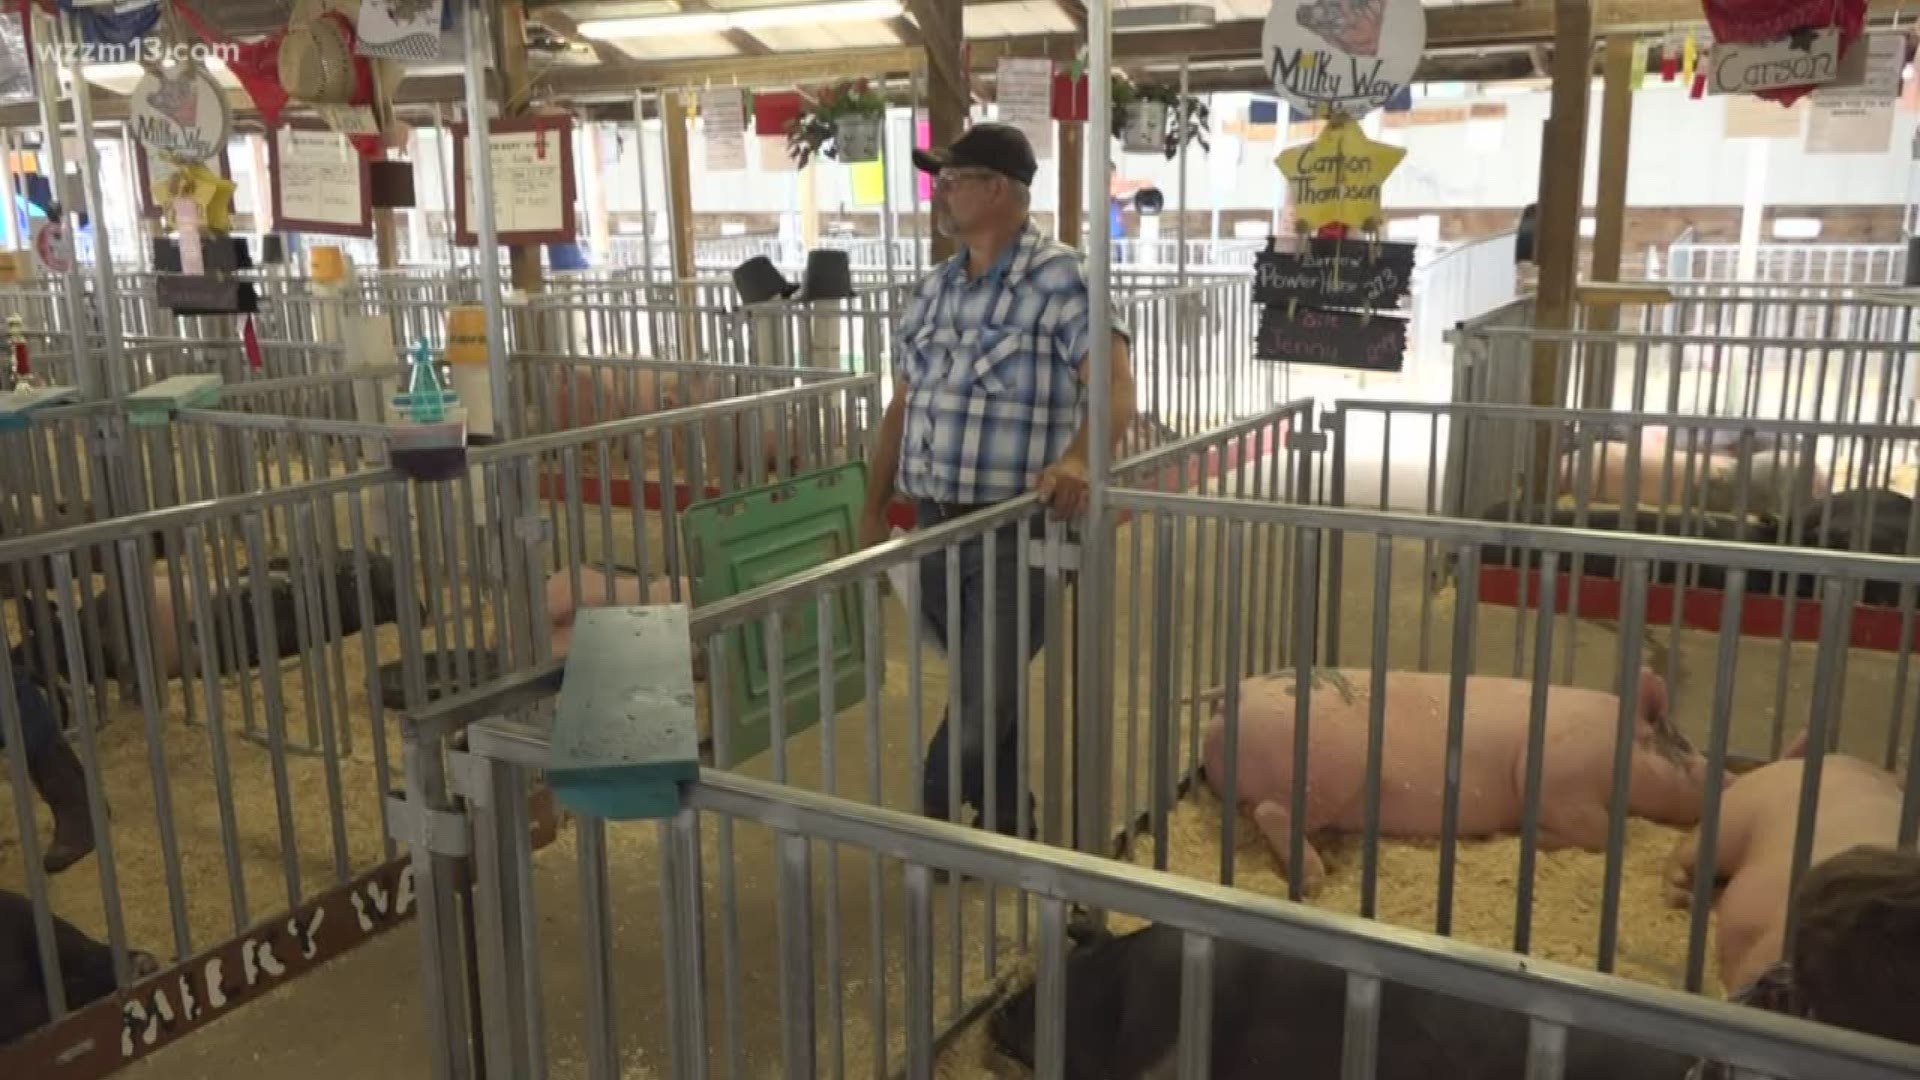 Swine flu concerns in Michigan